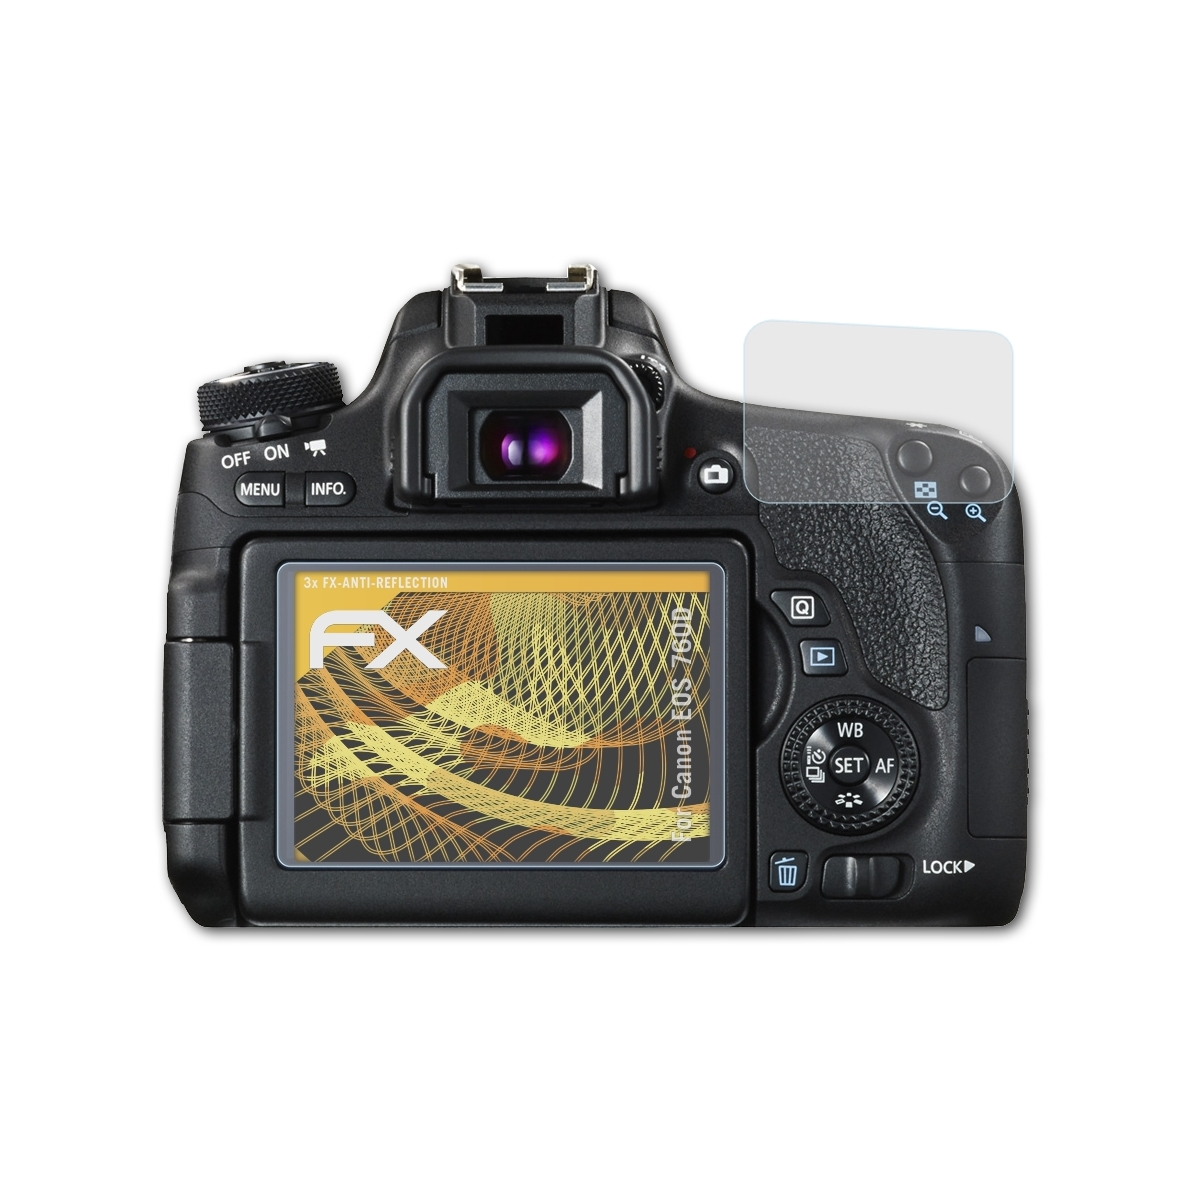 ATFOLIX Displayschutz(für EOS 3x 760D) Canon FX-Antireflex